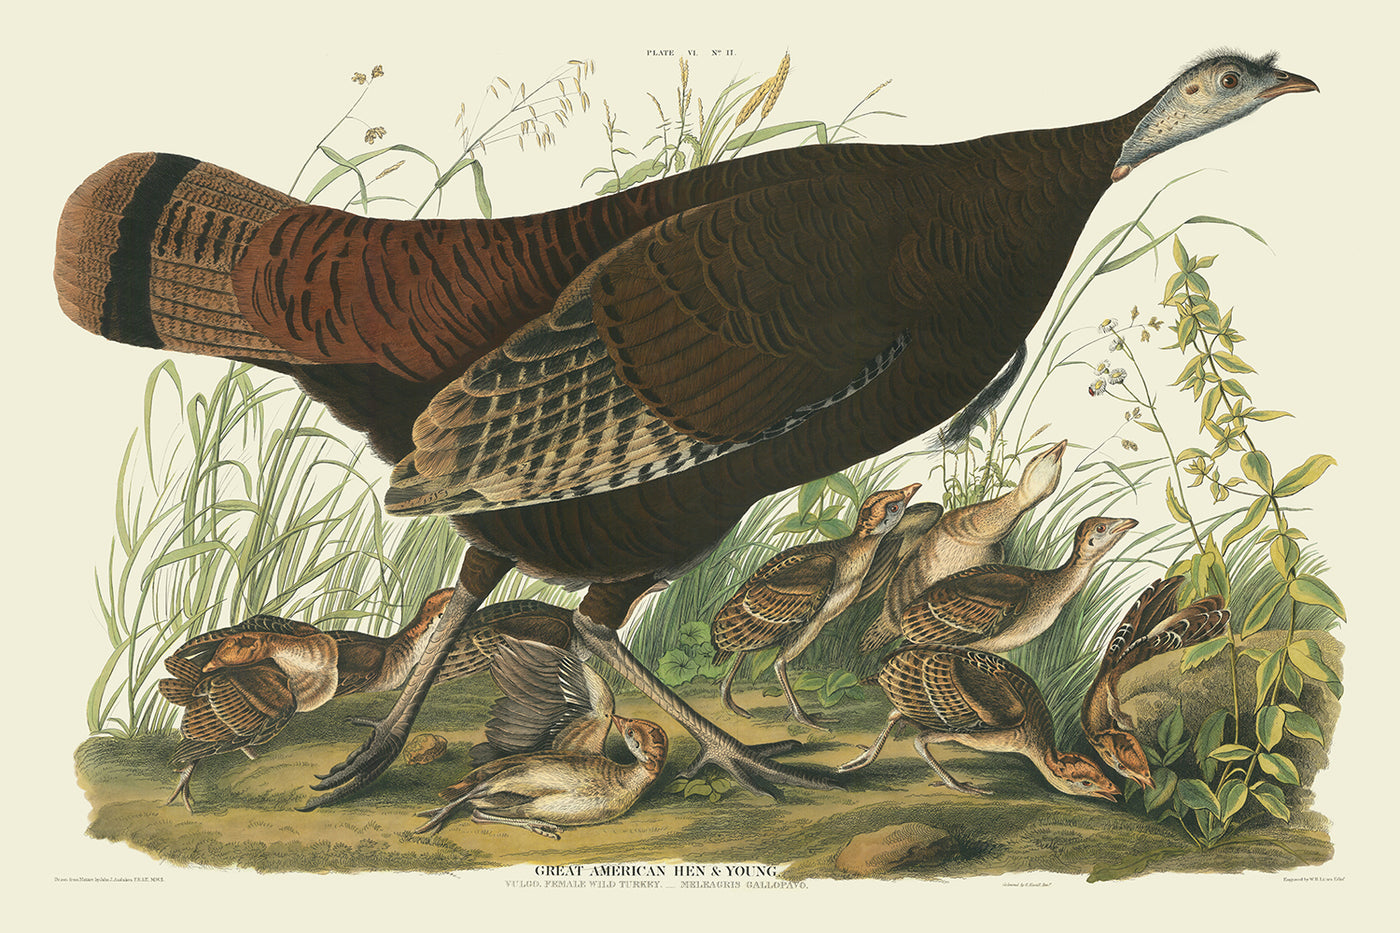 Große Amerikanische Henne von John James Audubon, 1827